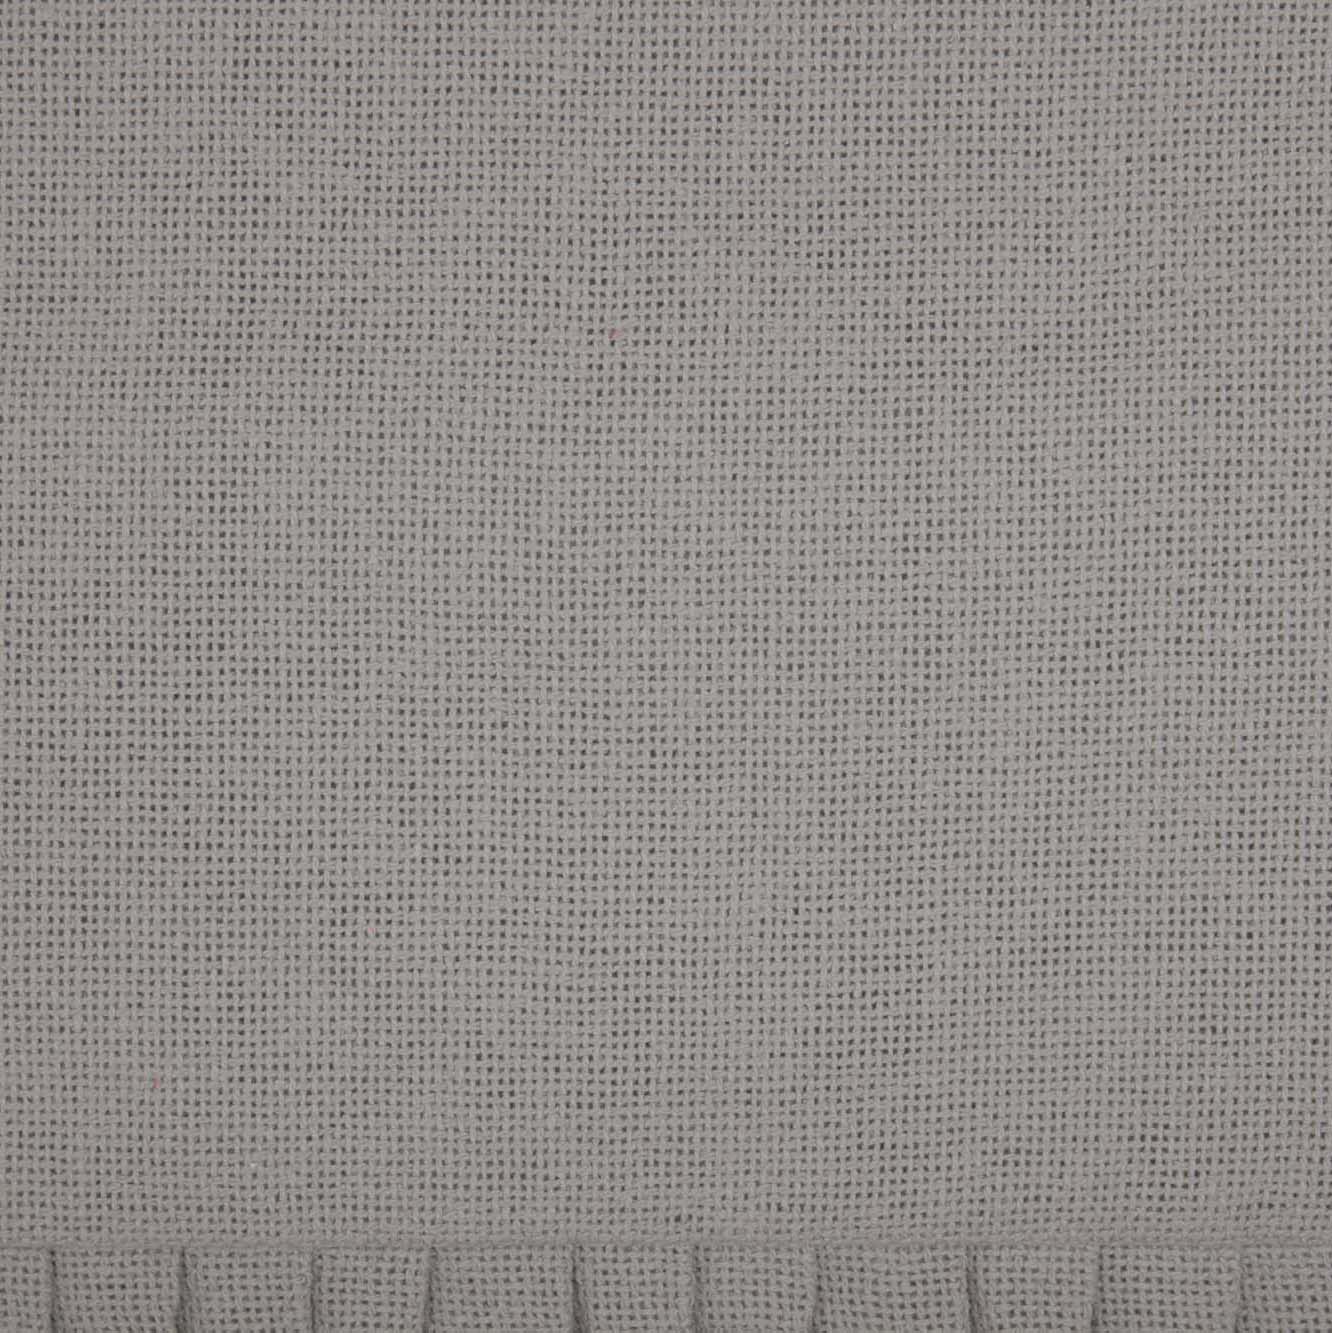 70052-Burlap-Dove-Grey-Fabric-Euro-Sham-w-Fringed-Ruffle-26x26-image-4